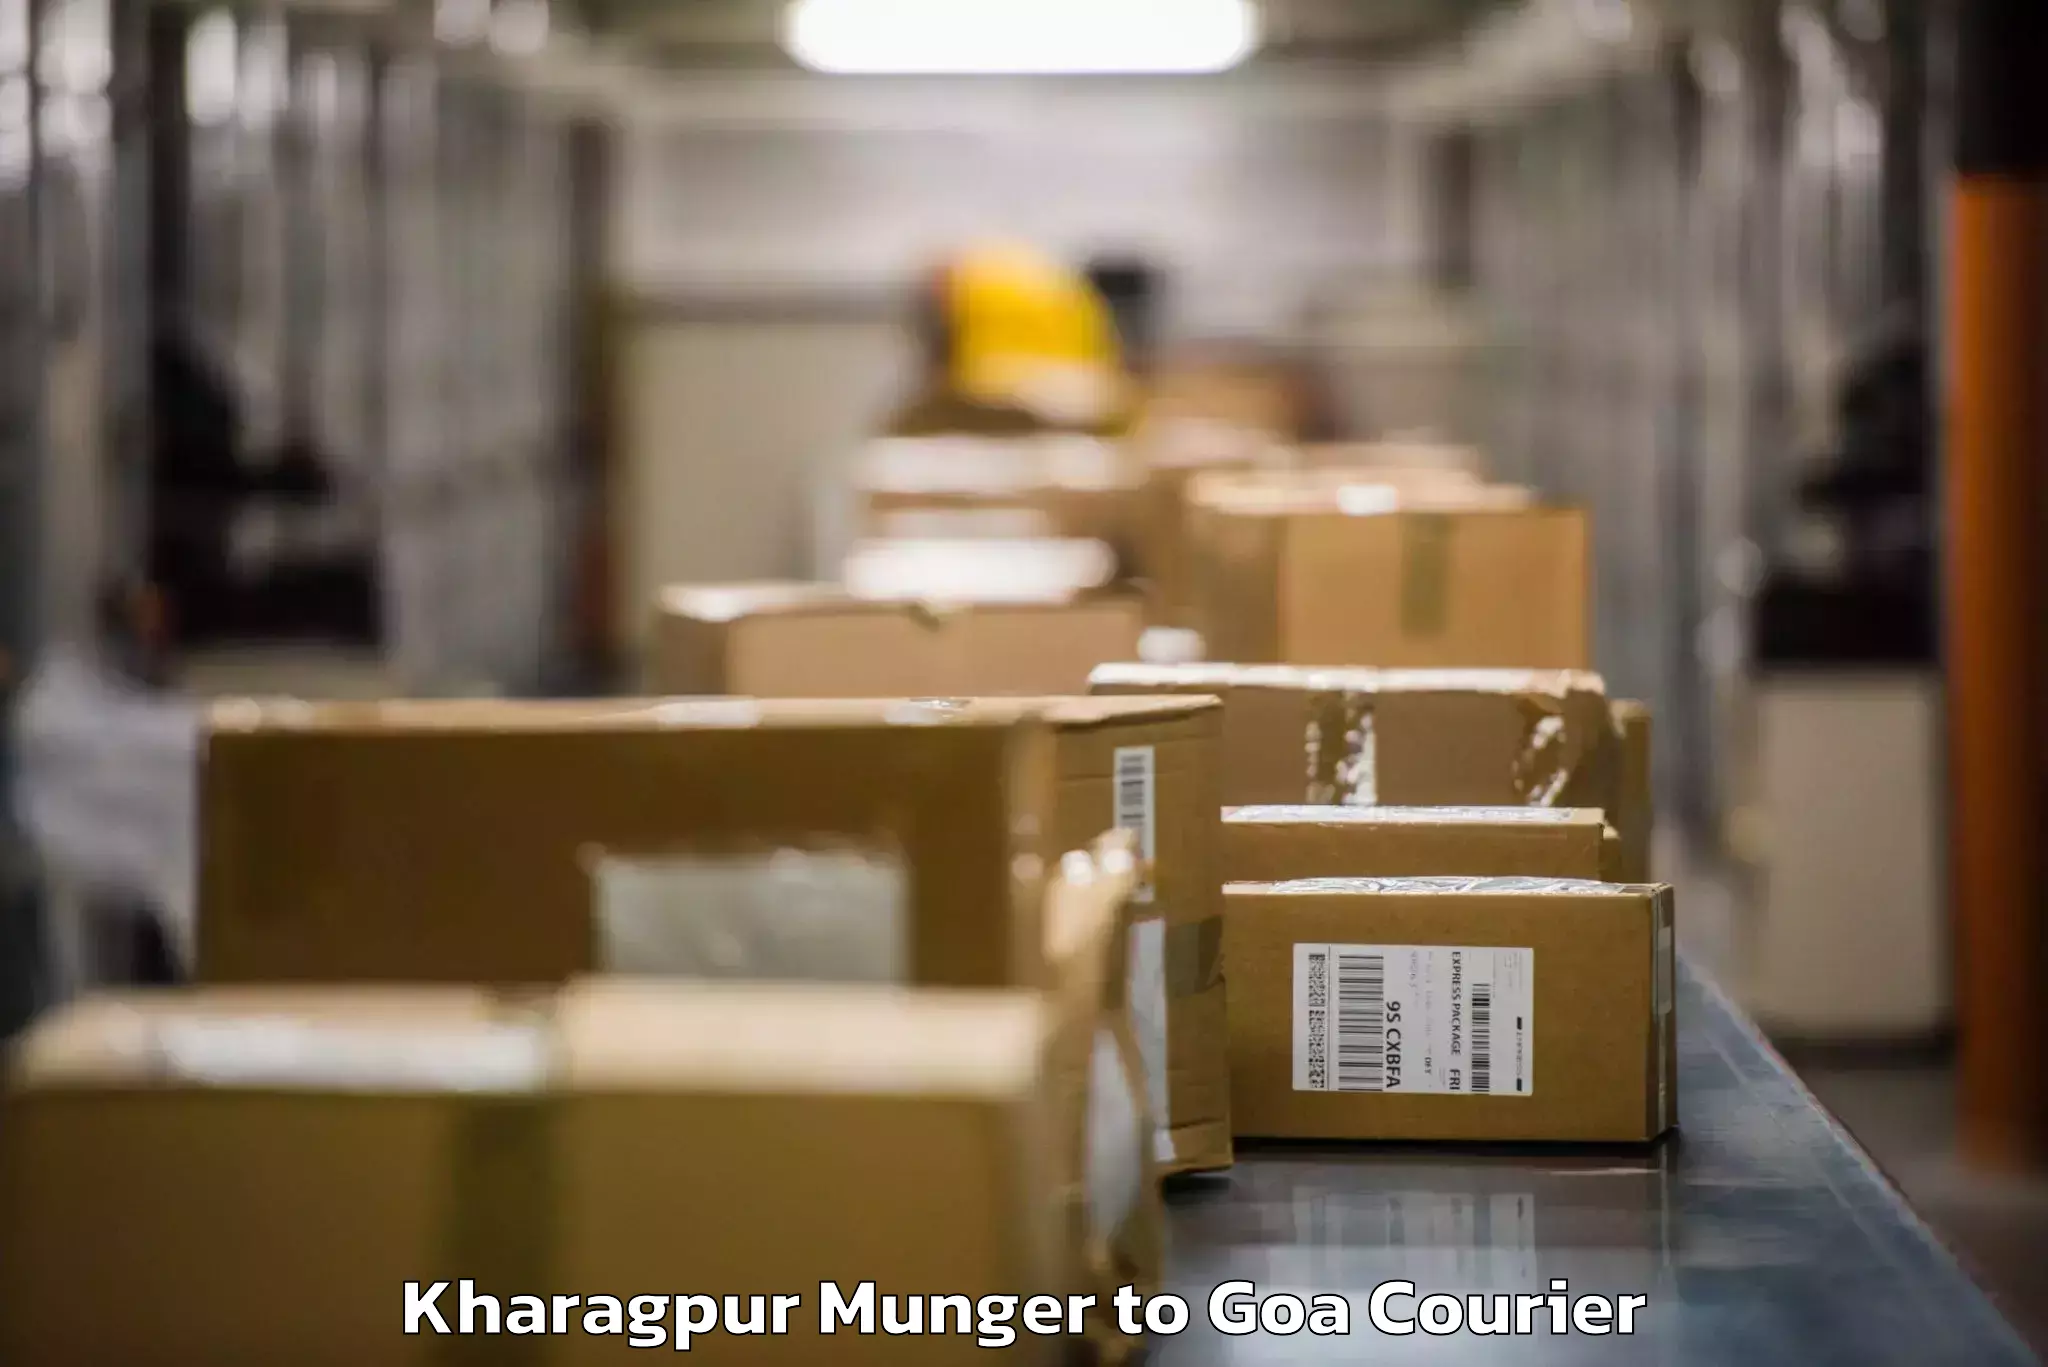 Excess baggage transport Kharagpur Munger to Goa University